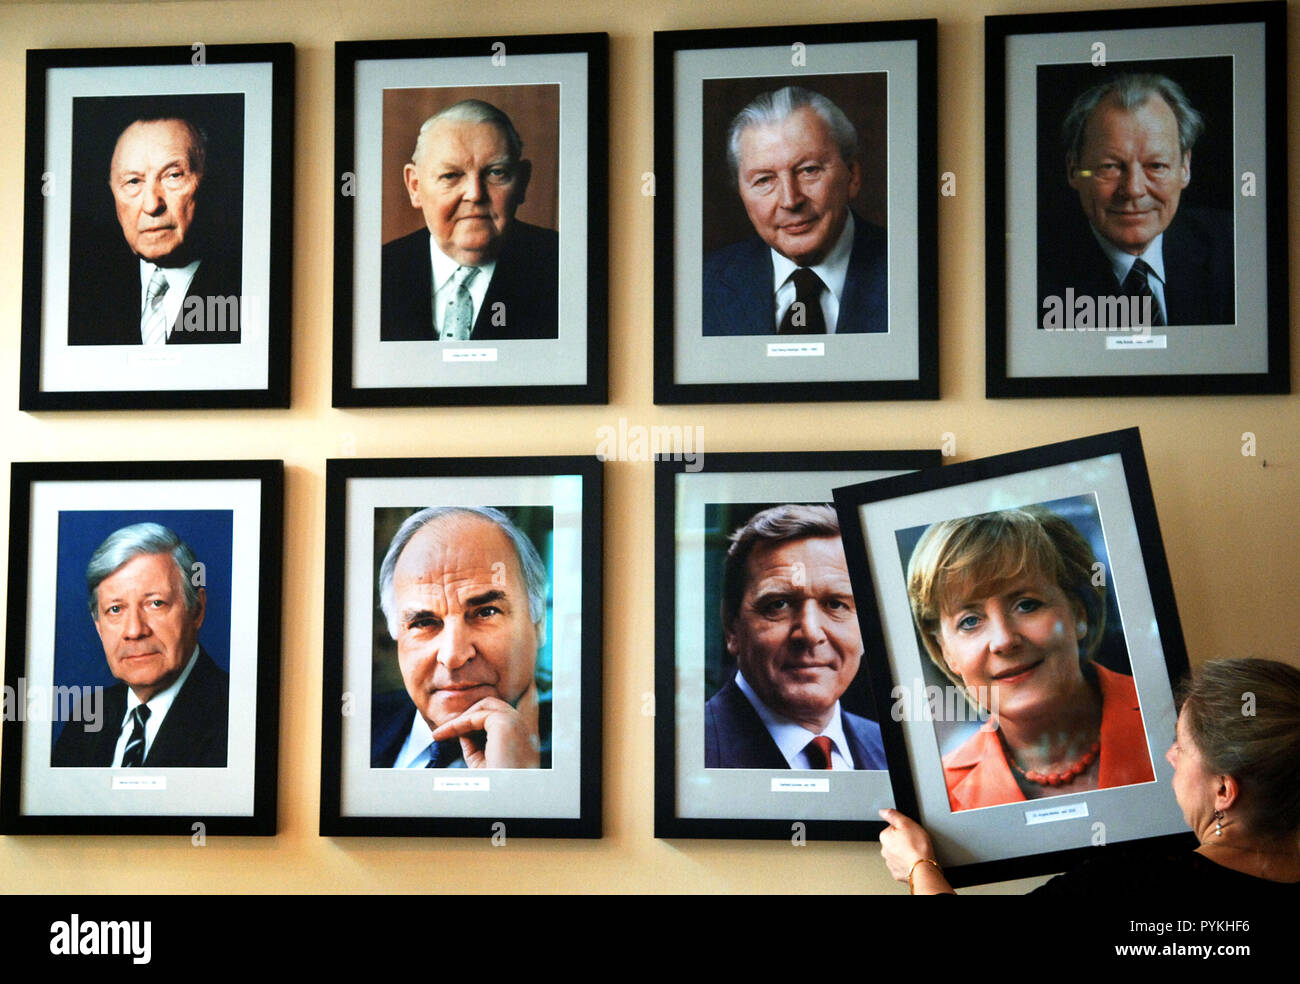 Das Foto der neuen Bundeskanzlerin Angela Merkel wird am Mittwoch Hung (23.11.2005) im Restaurant "KanzlerEck" in Berlin Neben den Porträts der ehemaligen deutschen Kanzler - von links nach rechts oben: Konrad Adenauer (CDU), Ludwig Erhard (CDU), Georg Kiesinger (CDU), Willy Brandt (SPD), von links nach rechts unten: Helmut Schmidt (SPD), Helmut Kohl (CDU), Gerhard Schröder (SPD). Merkel hatte der Tag gewählt, bevor sie durch den Bundestag für den ersten deutschen Bundeskanzler. Foto: Jens Buttner dpa/lbn (c) dpa-Bericht | Verwendung weltweit Stockfoto